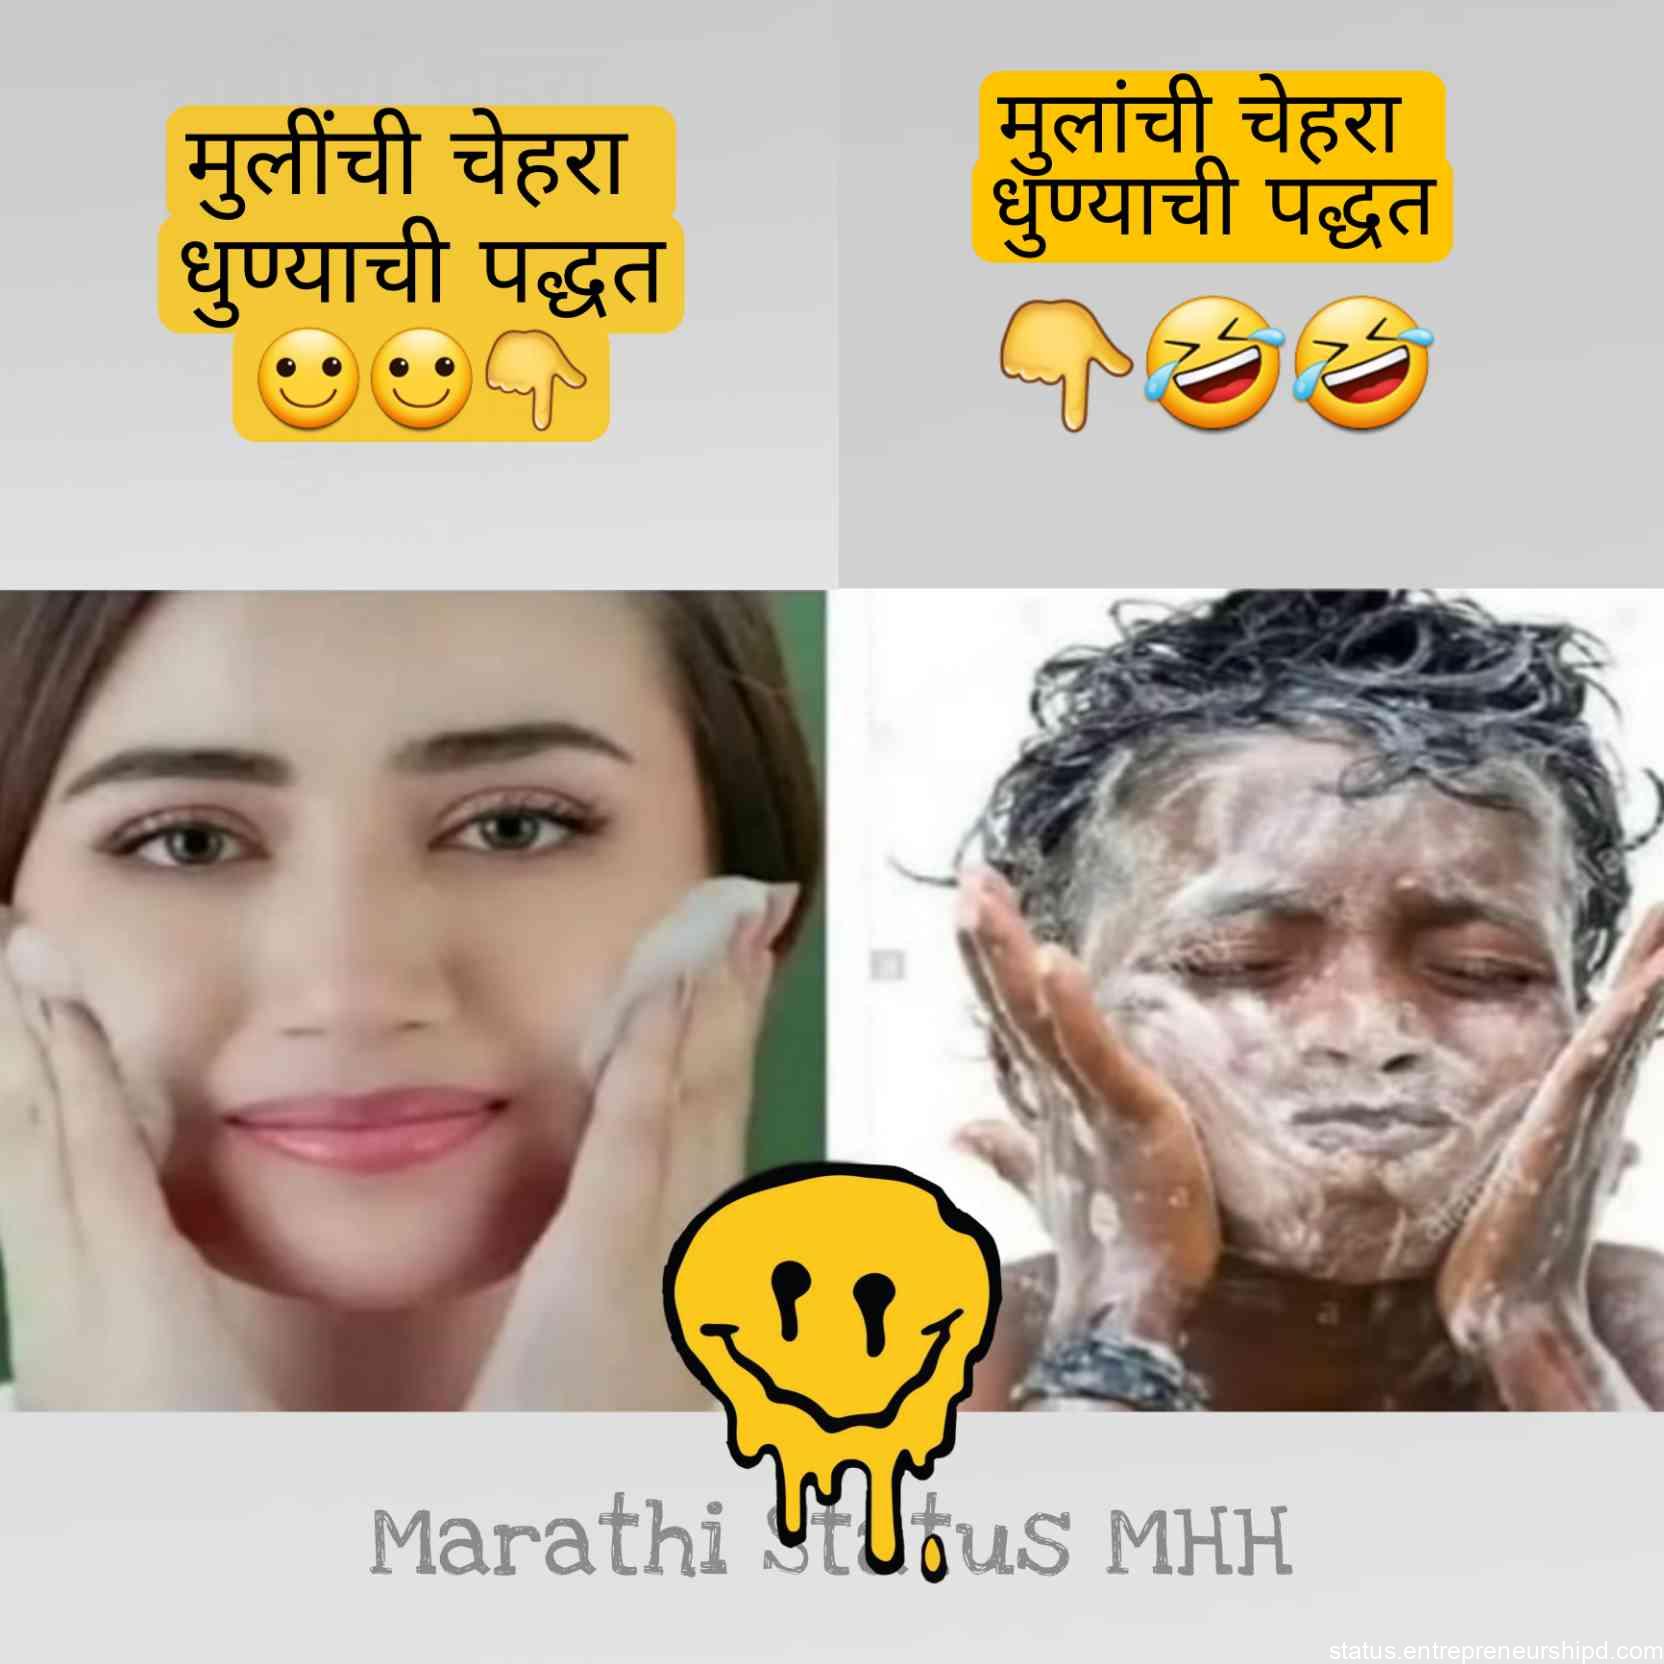 Marathi memes on मेकप